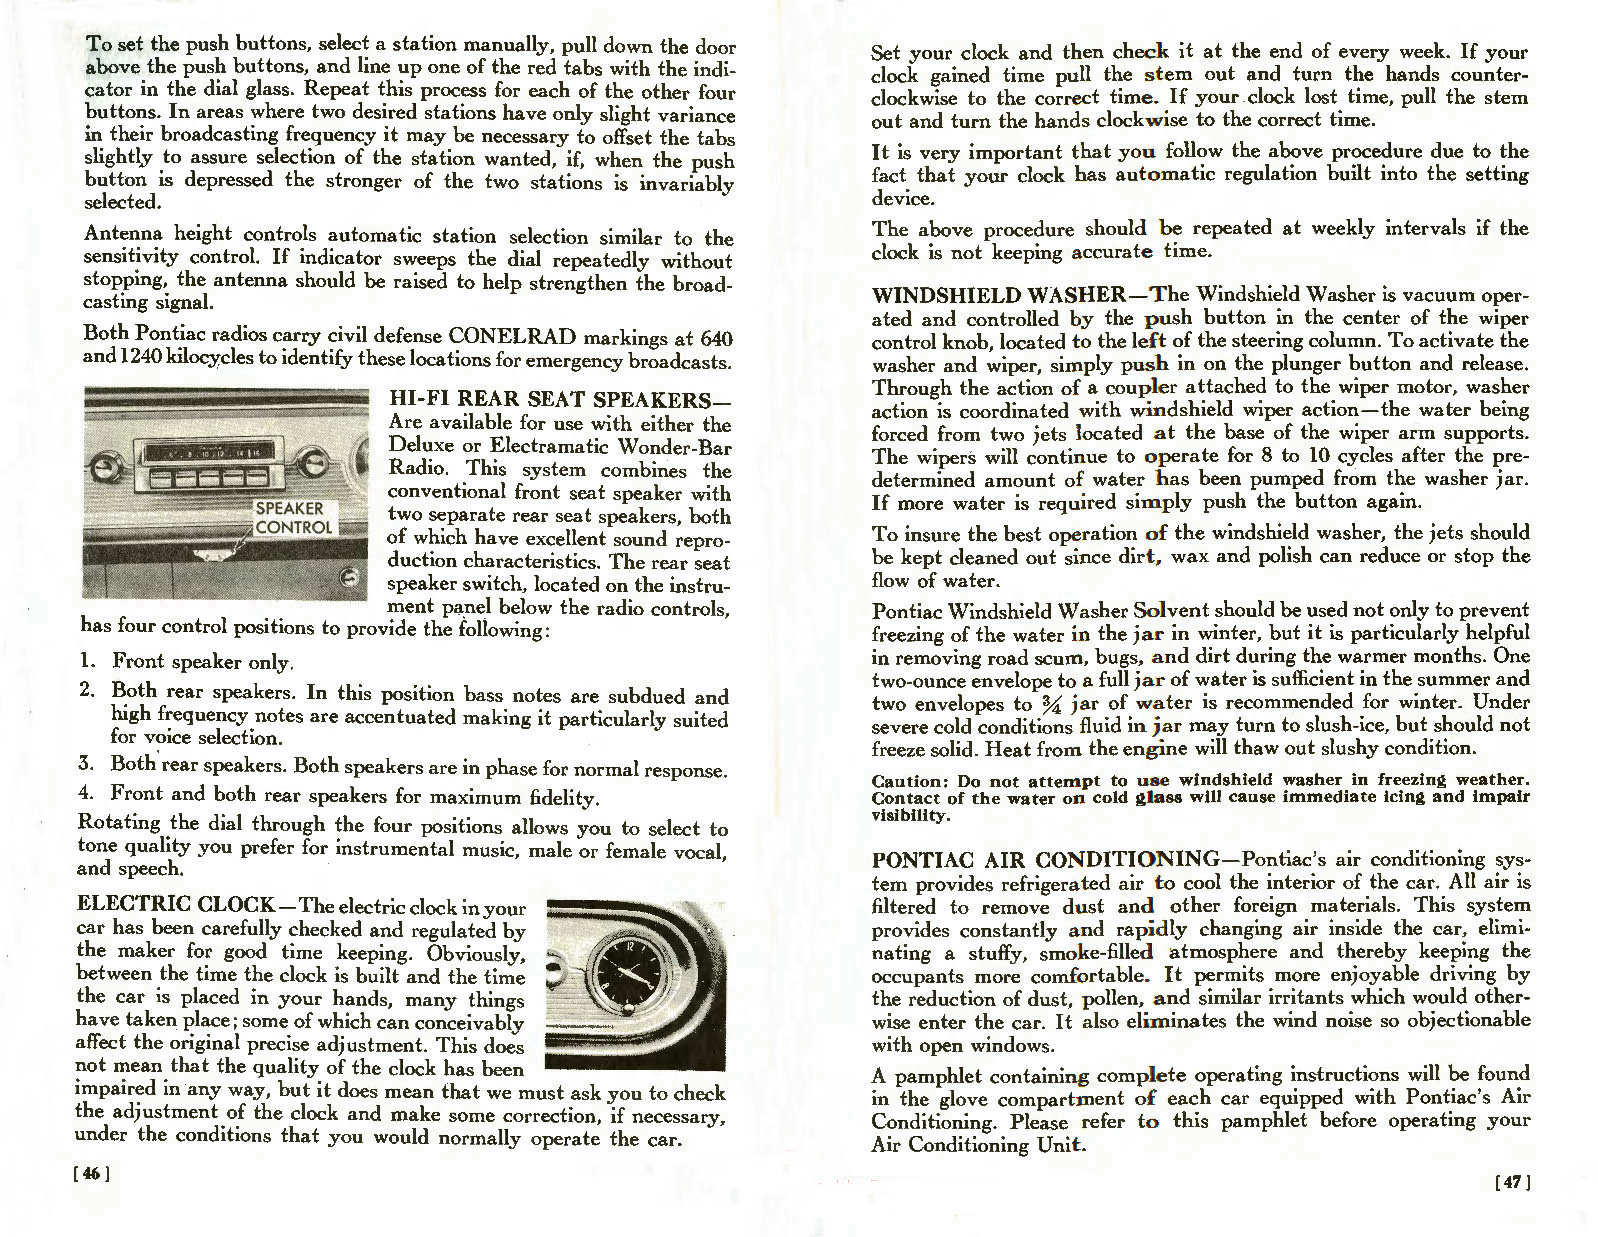 n_1957 Pontiac Owners Guide-46-47.jpg